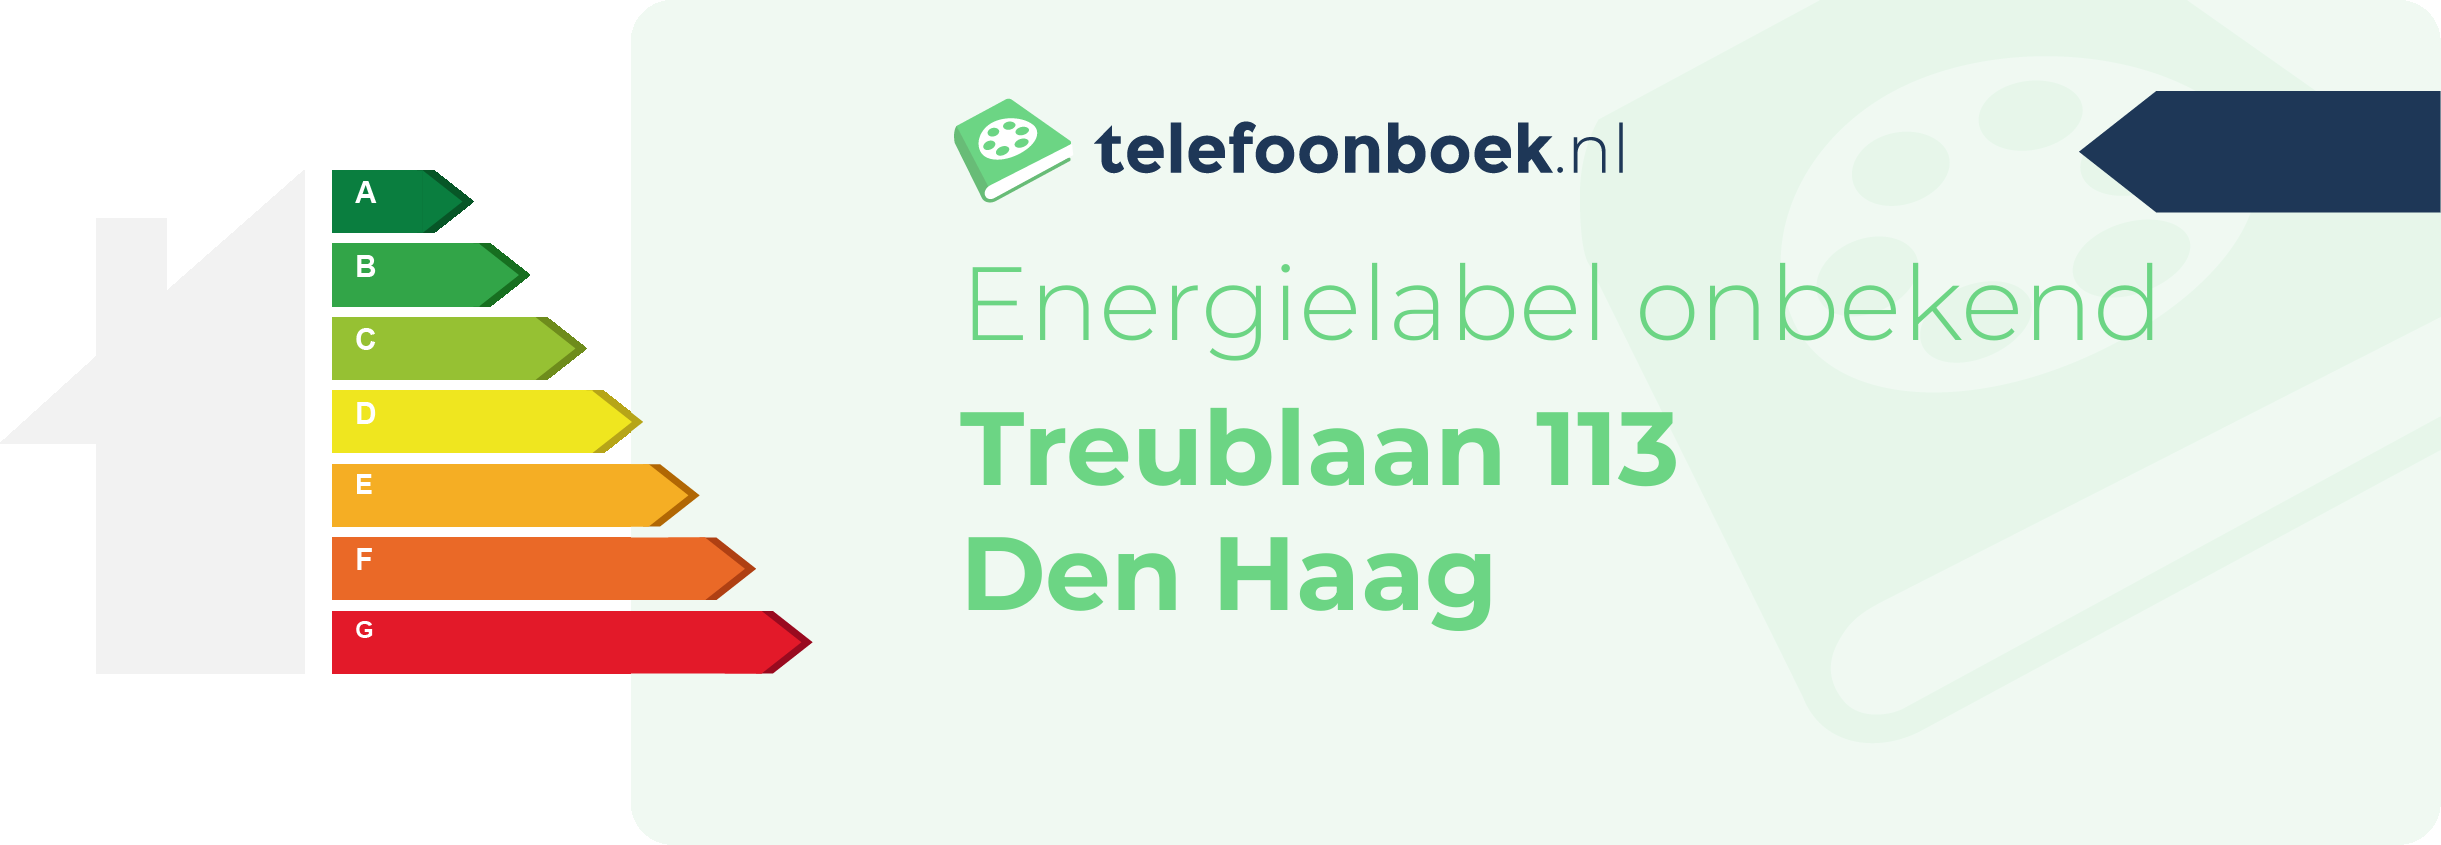 Energielabel Treublaan 113 Den Haag